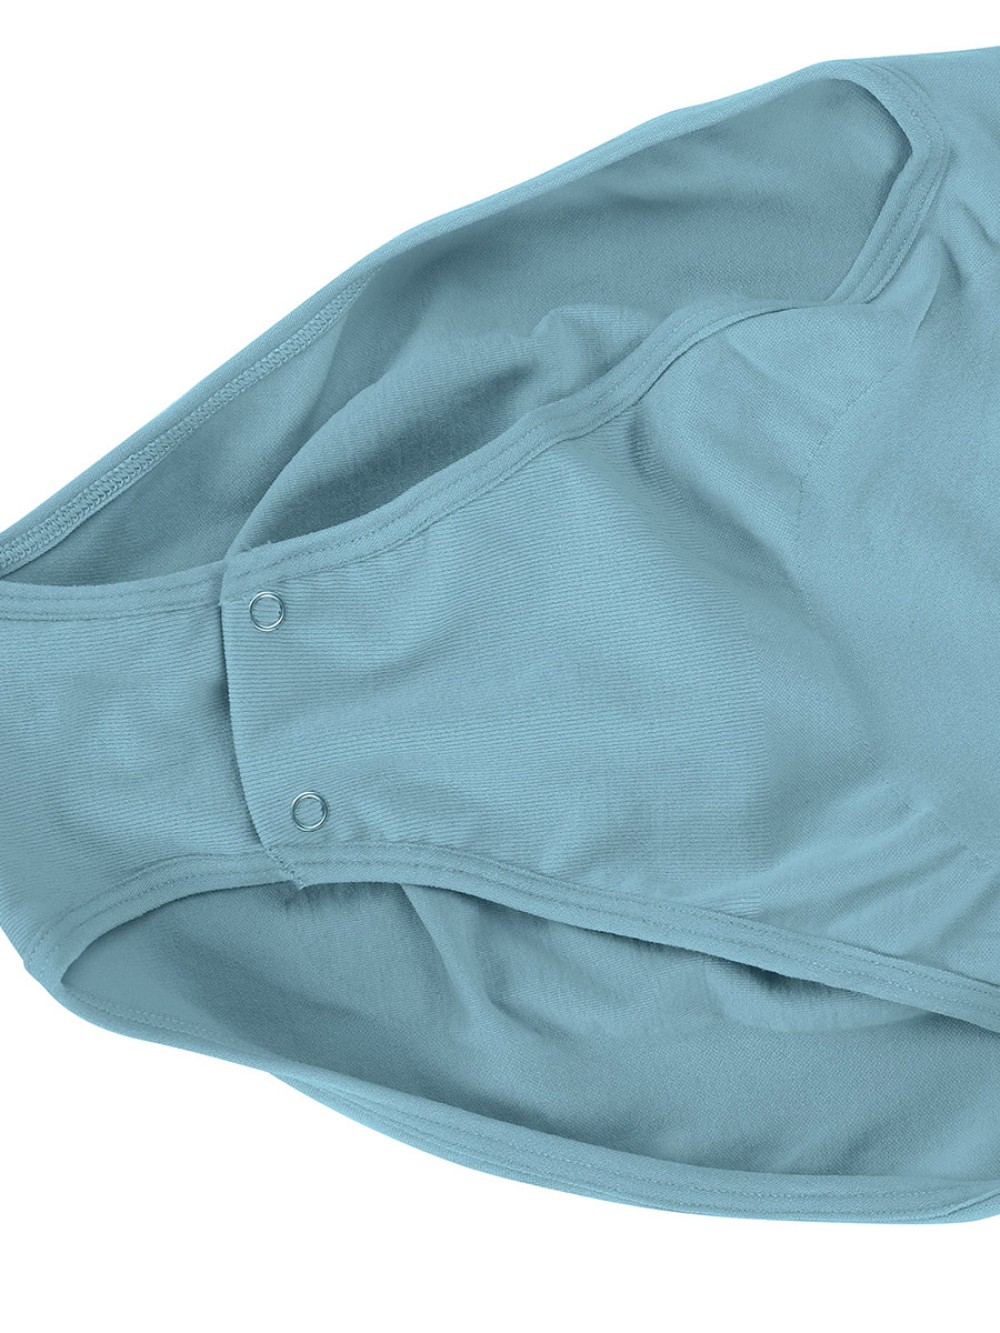 Blue Seamless Shapewear Bodysuit For Women